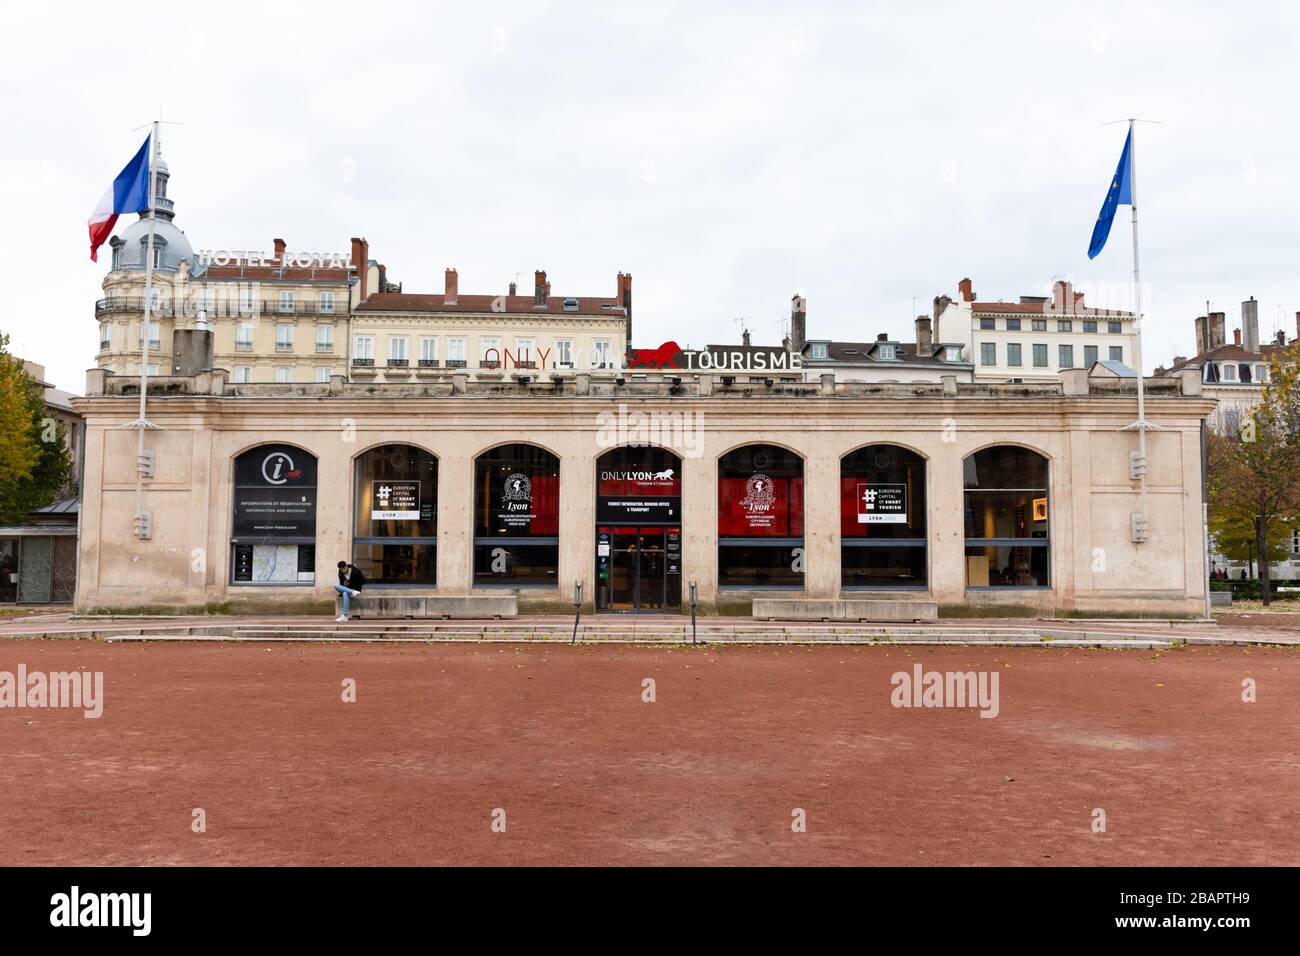 LYON, FRANCE - 24 novembre 2019: Seulement Lyon signe sur le bureau de Tourisme de la place Bellecour dans l'après-midi c'est le marquage visuel. Banque D'Images